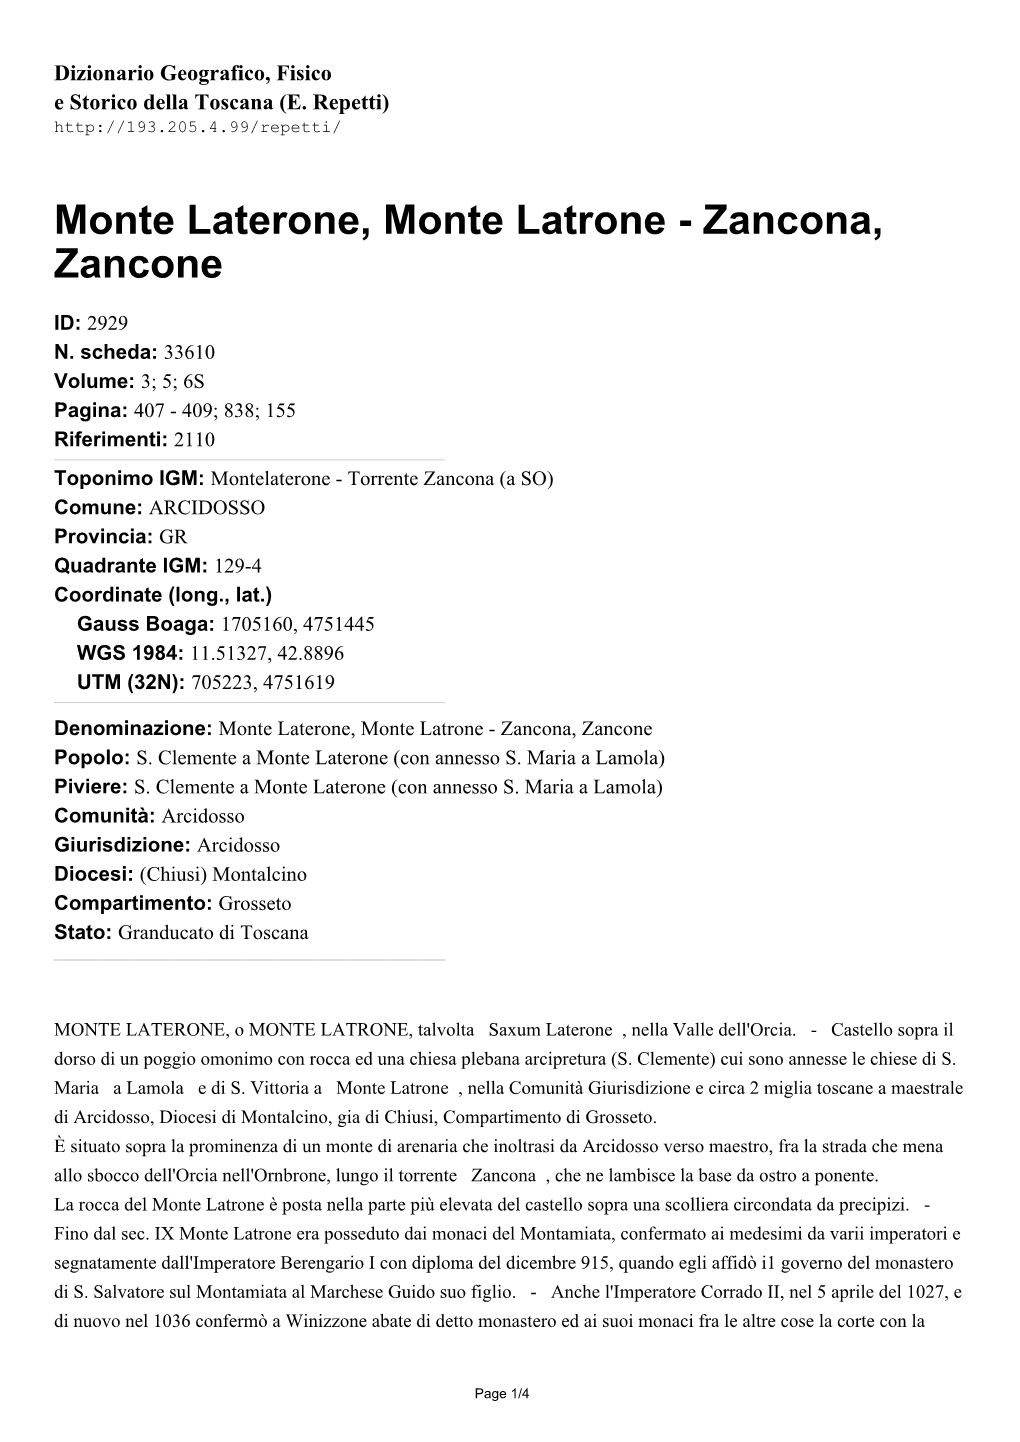 Monte Laterone, Monte Latrone - Zancona, Zancone